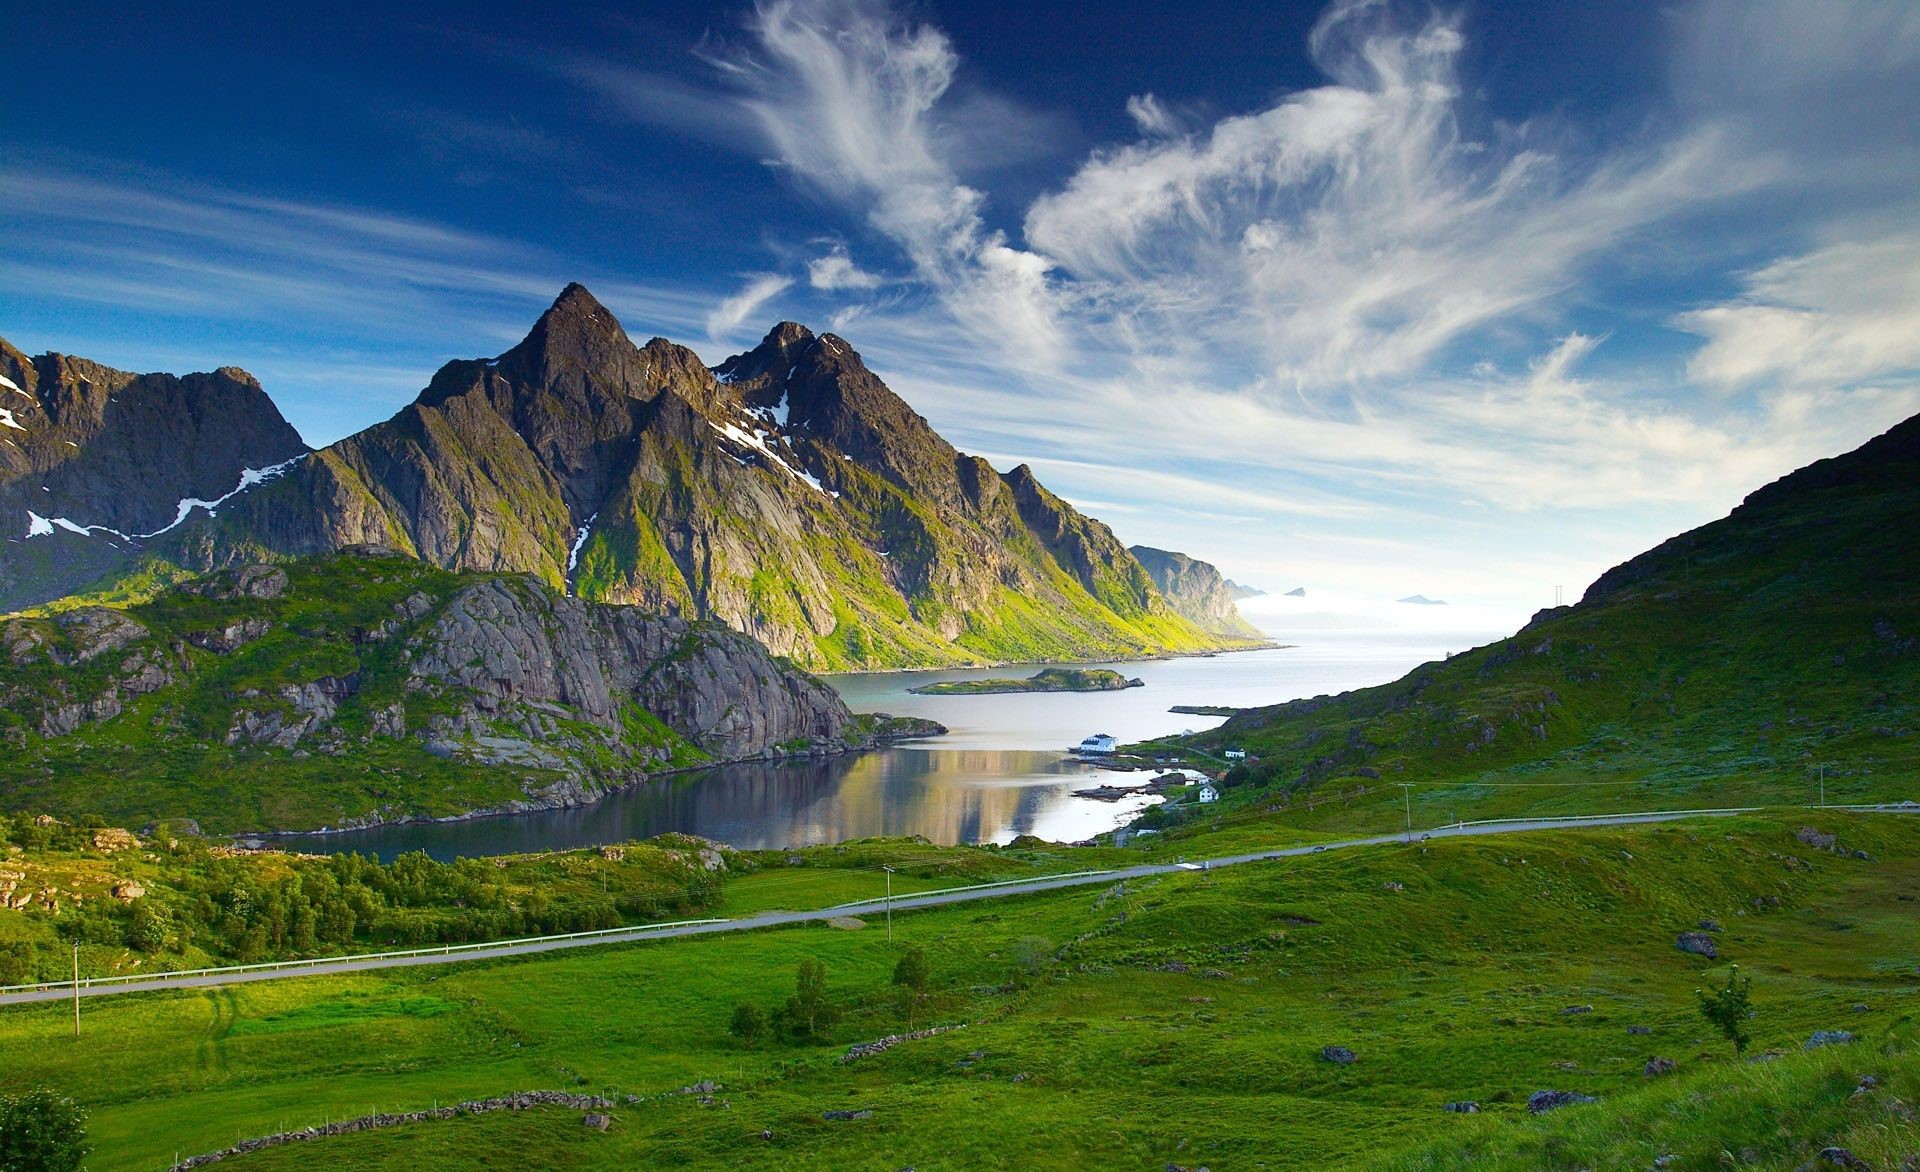 دانلود رایگان تصویر طبیعت اسکاندیناوی با کیفیت Full HD 	